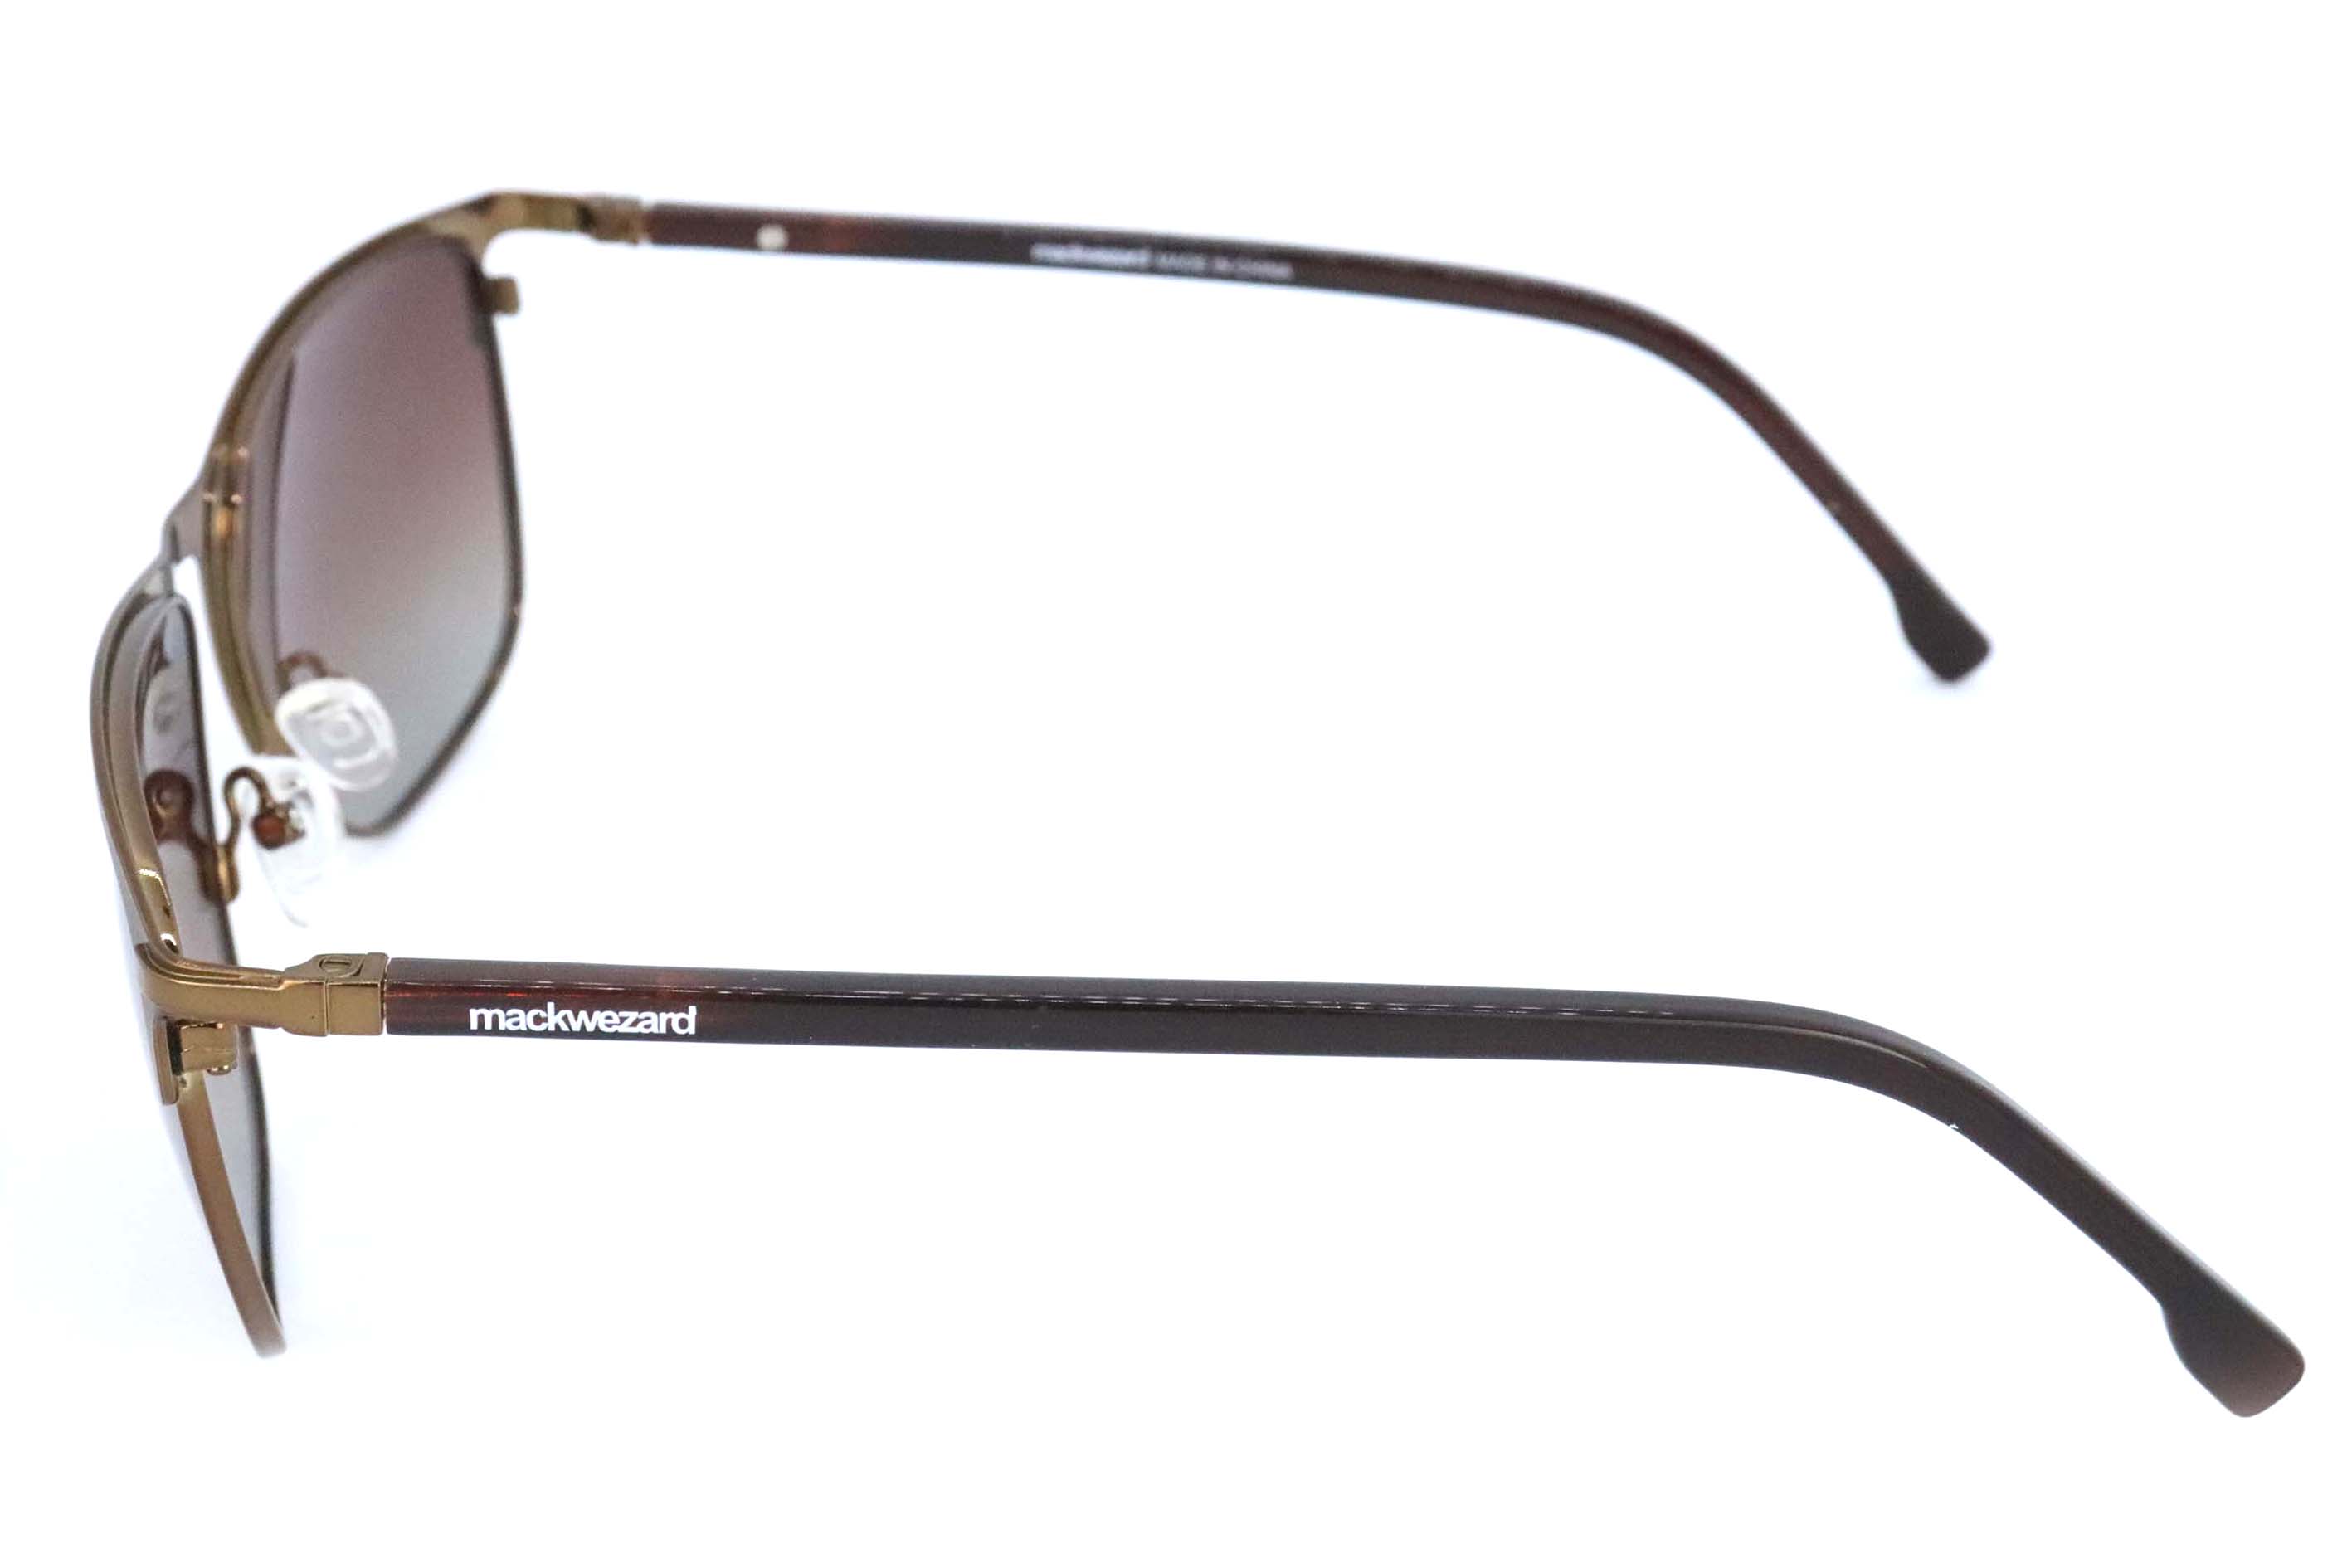 MackWezard Sunglasses -5233-C2-55-18-140